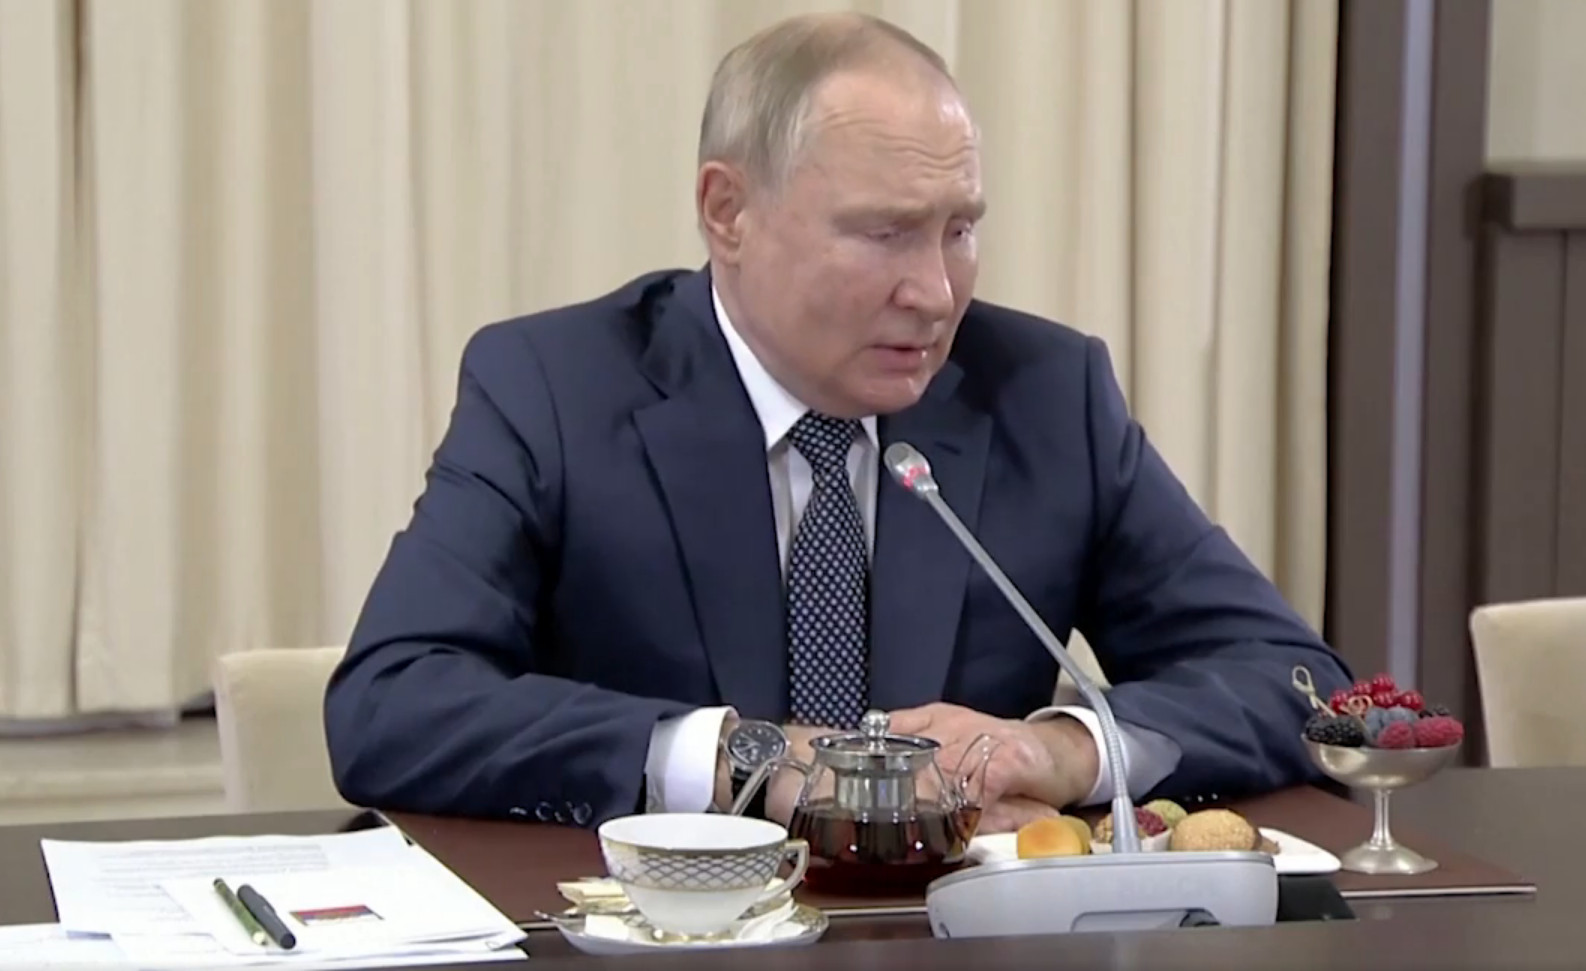 Khoảnh khắc 'bệnh nặng' Putin thở khò khè trong những ngày họp sau khi bị  phát hiện bàn tay tím tái - Thời báo